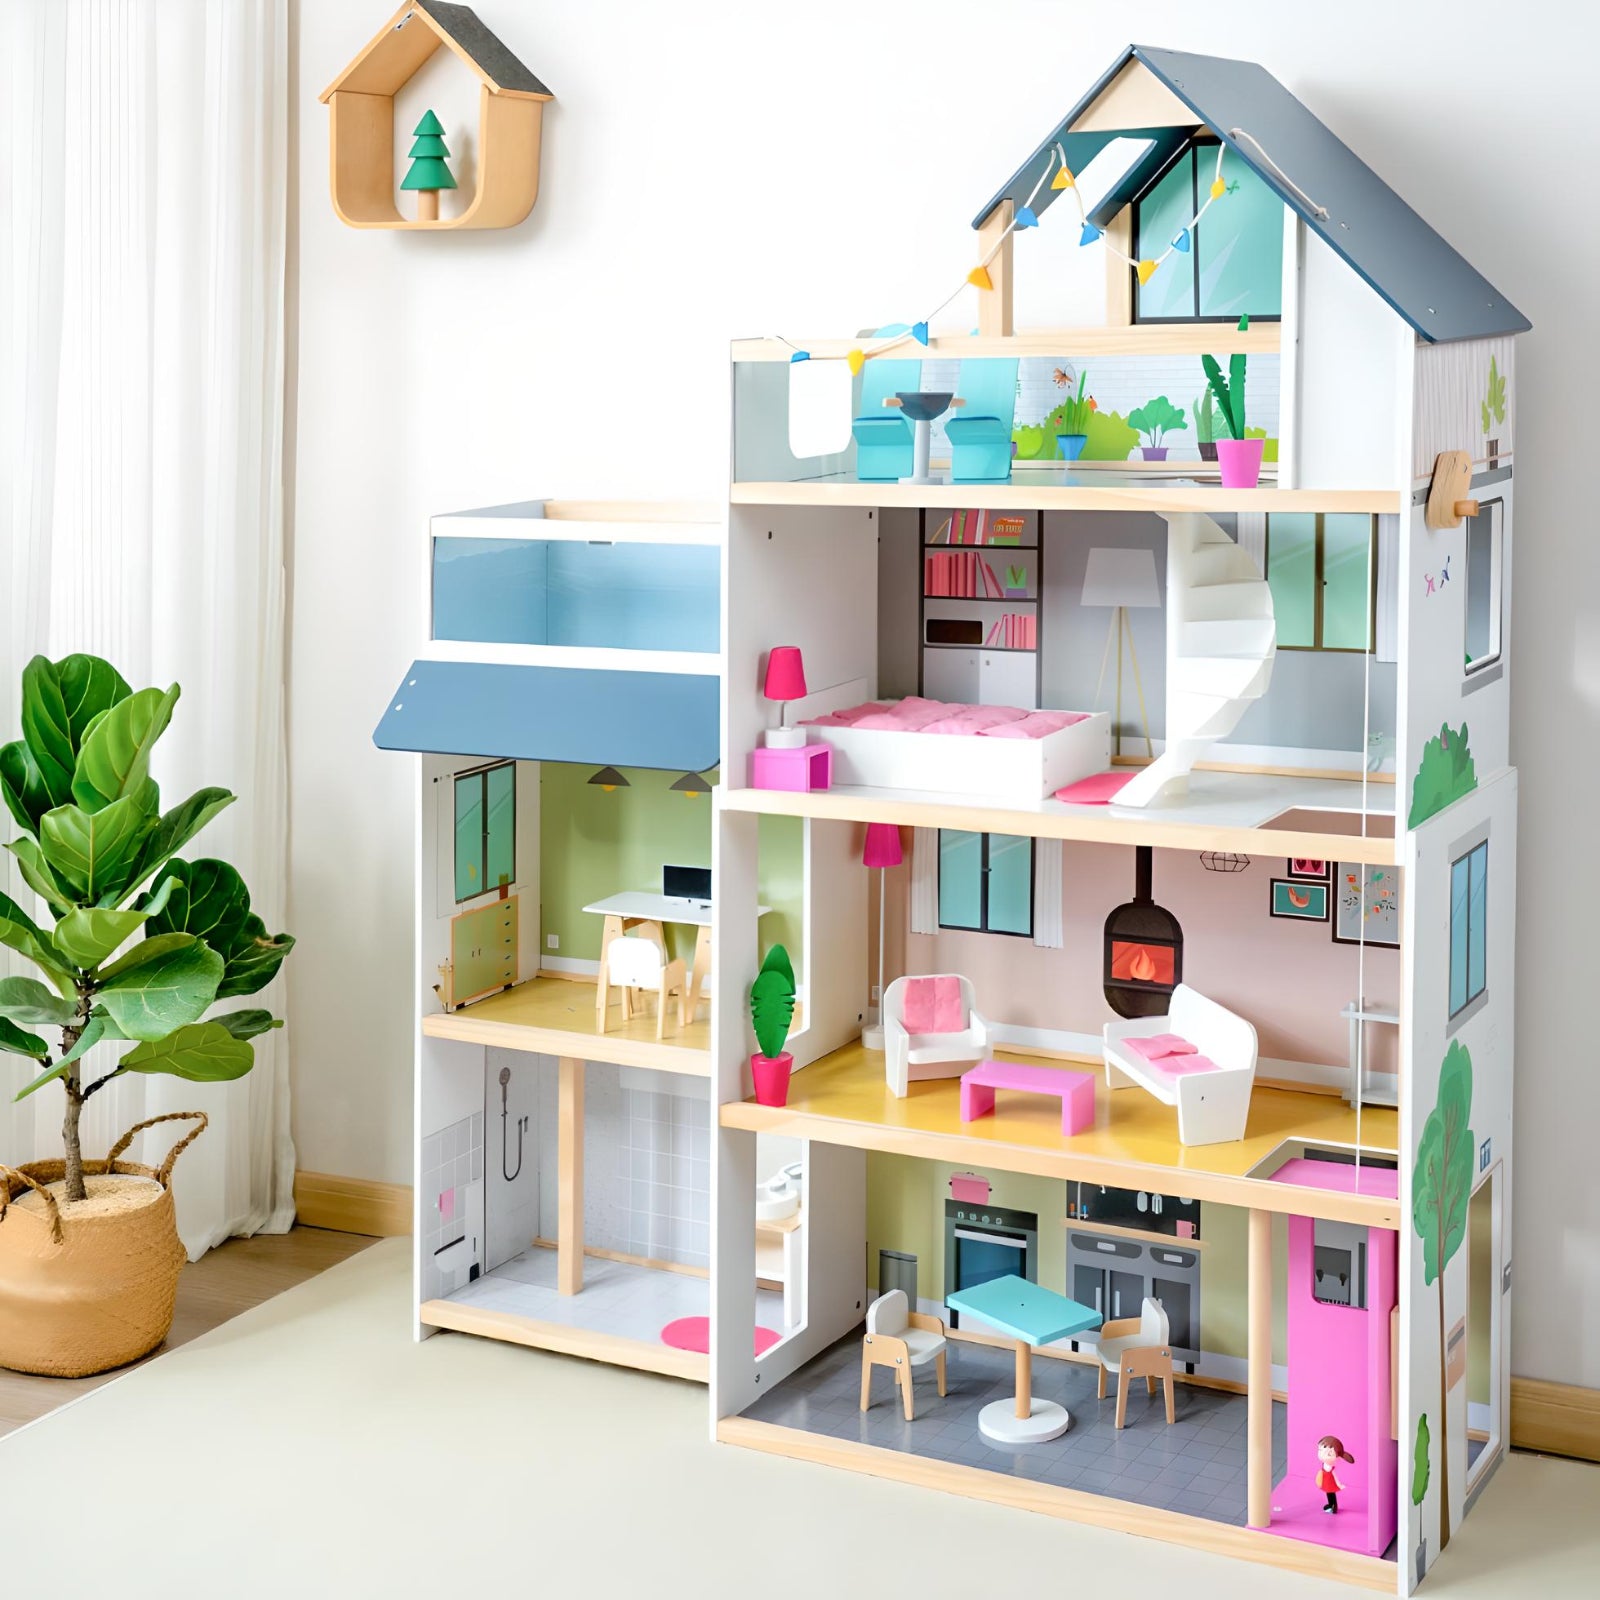 Petit Seal Das Kreativspielhaus für Kinder - Ein preisgekröntes Puppenhaus mit Möbeln und Zubehör